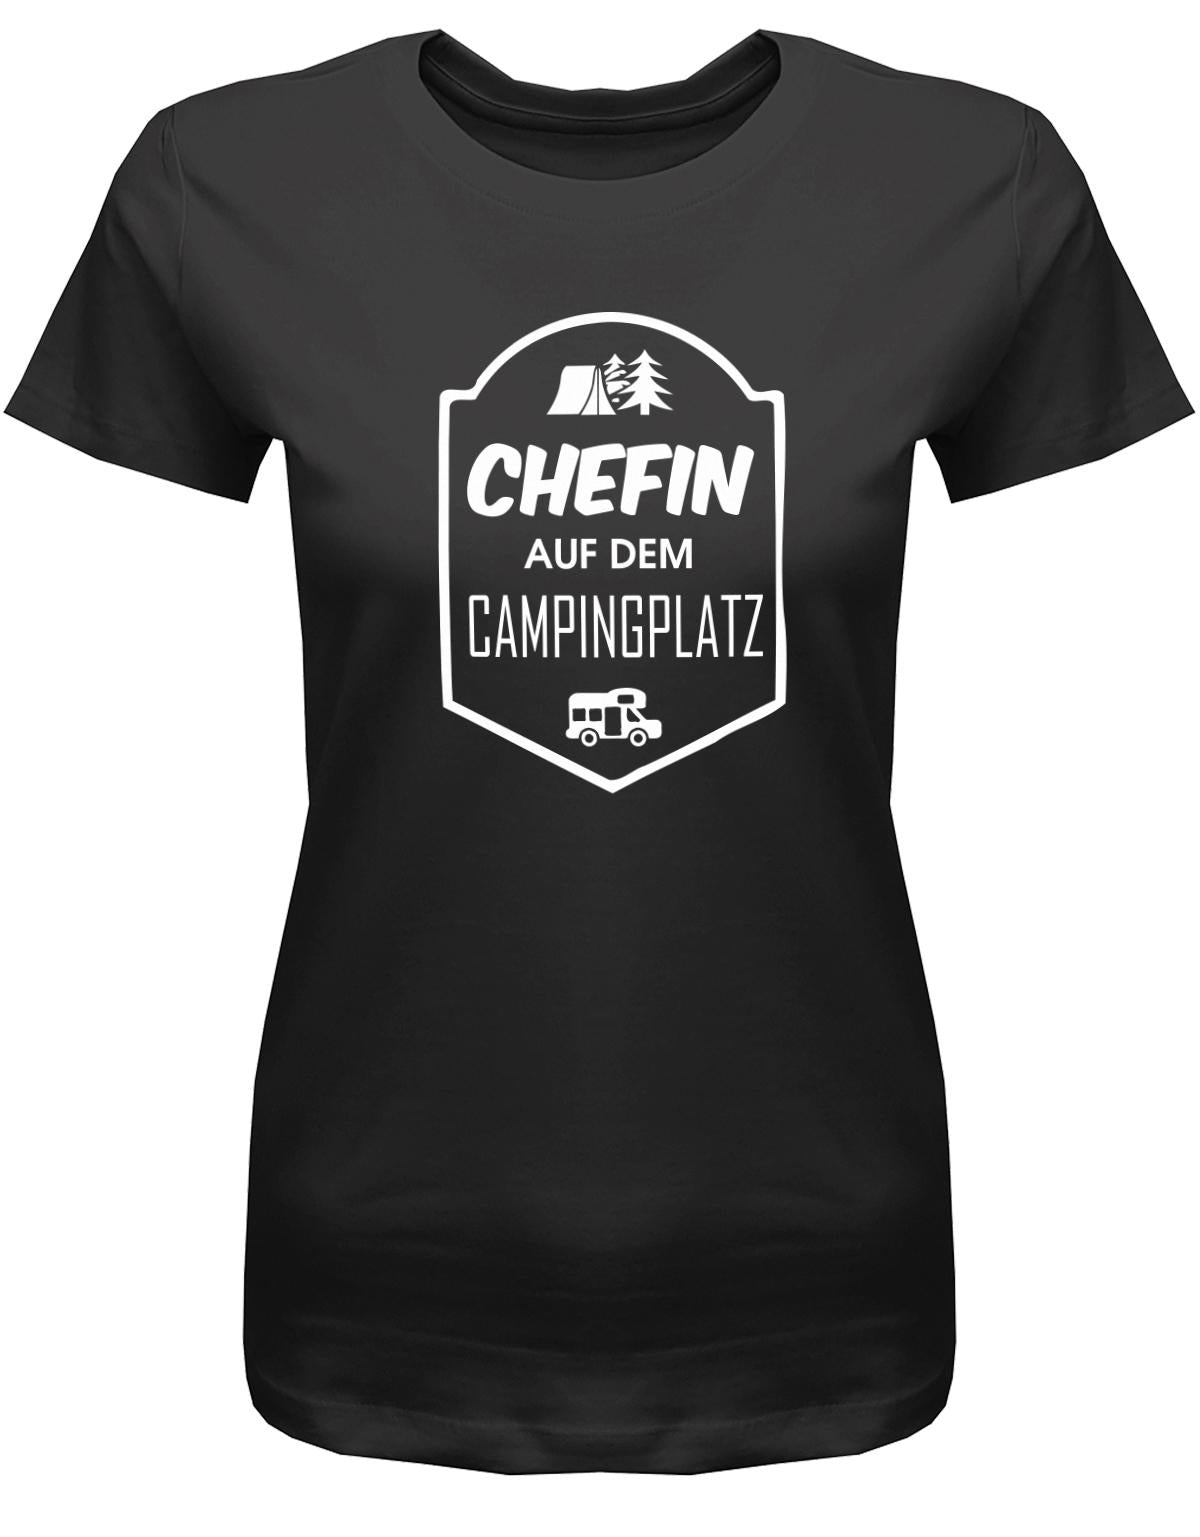 Chefin-auf-dem-Campingplatz-Damen-Shirt-schwarz